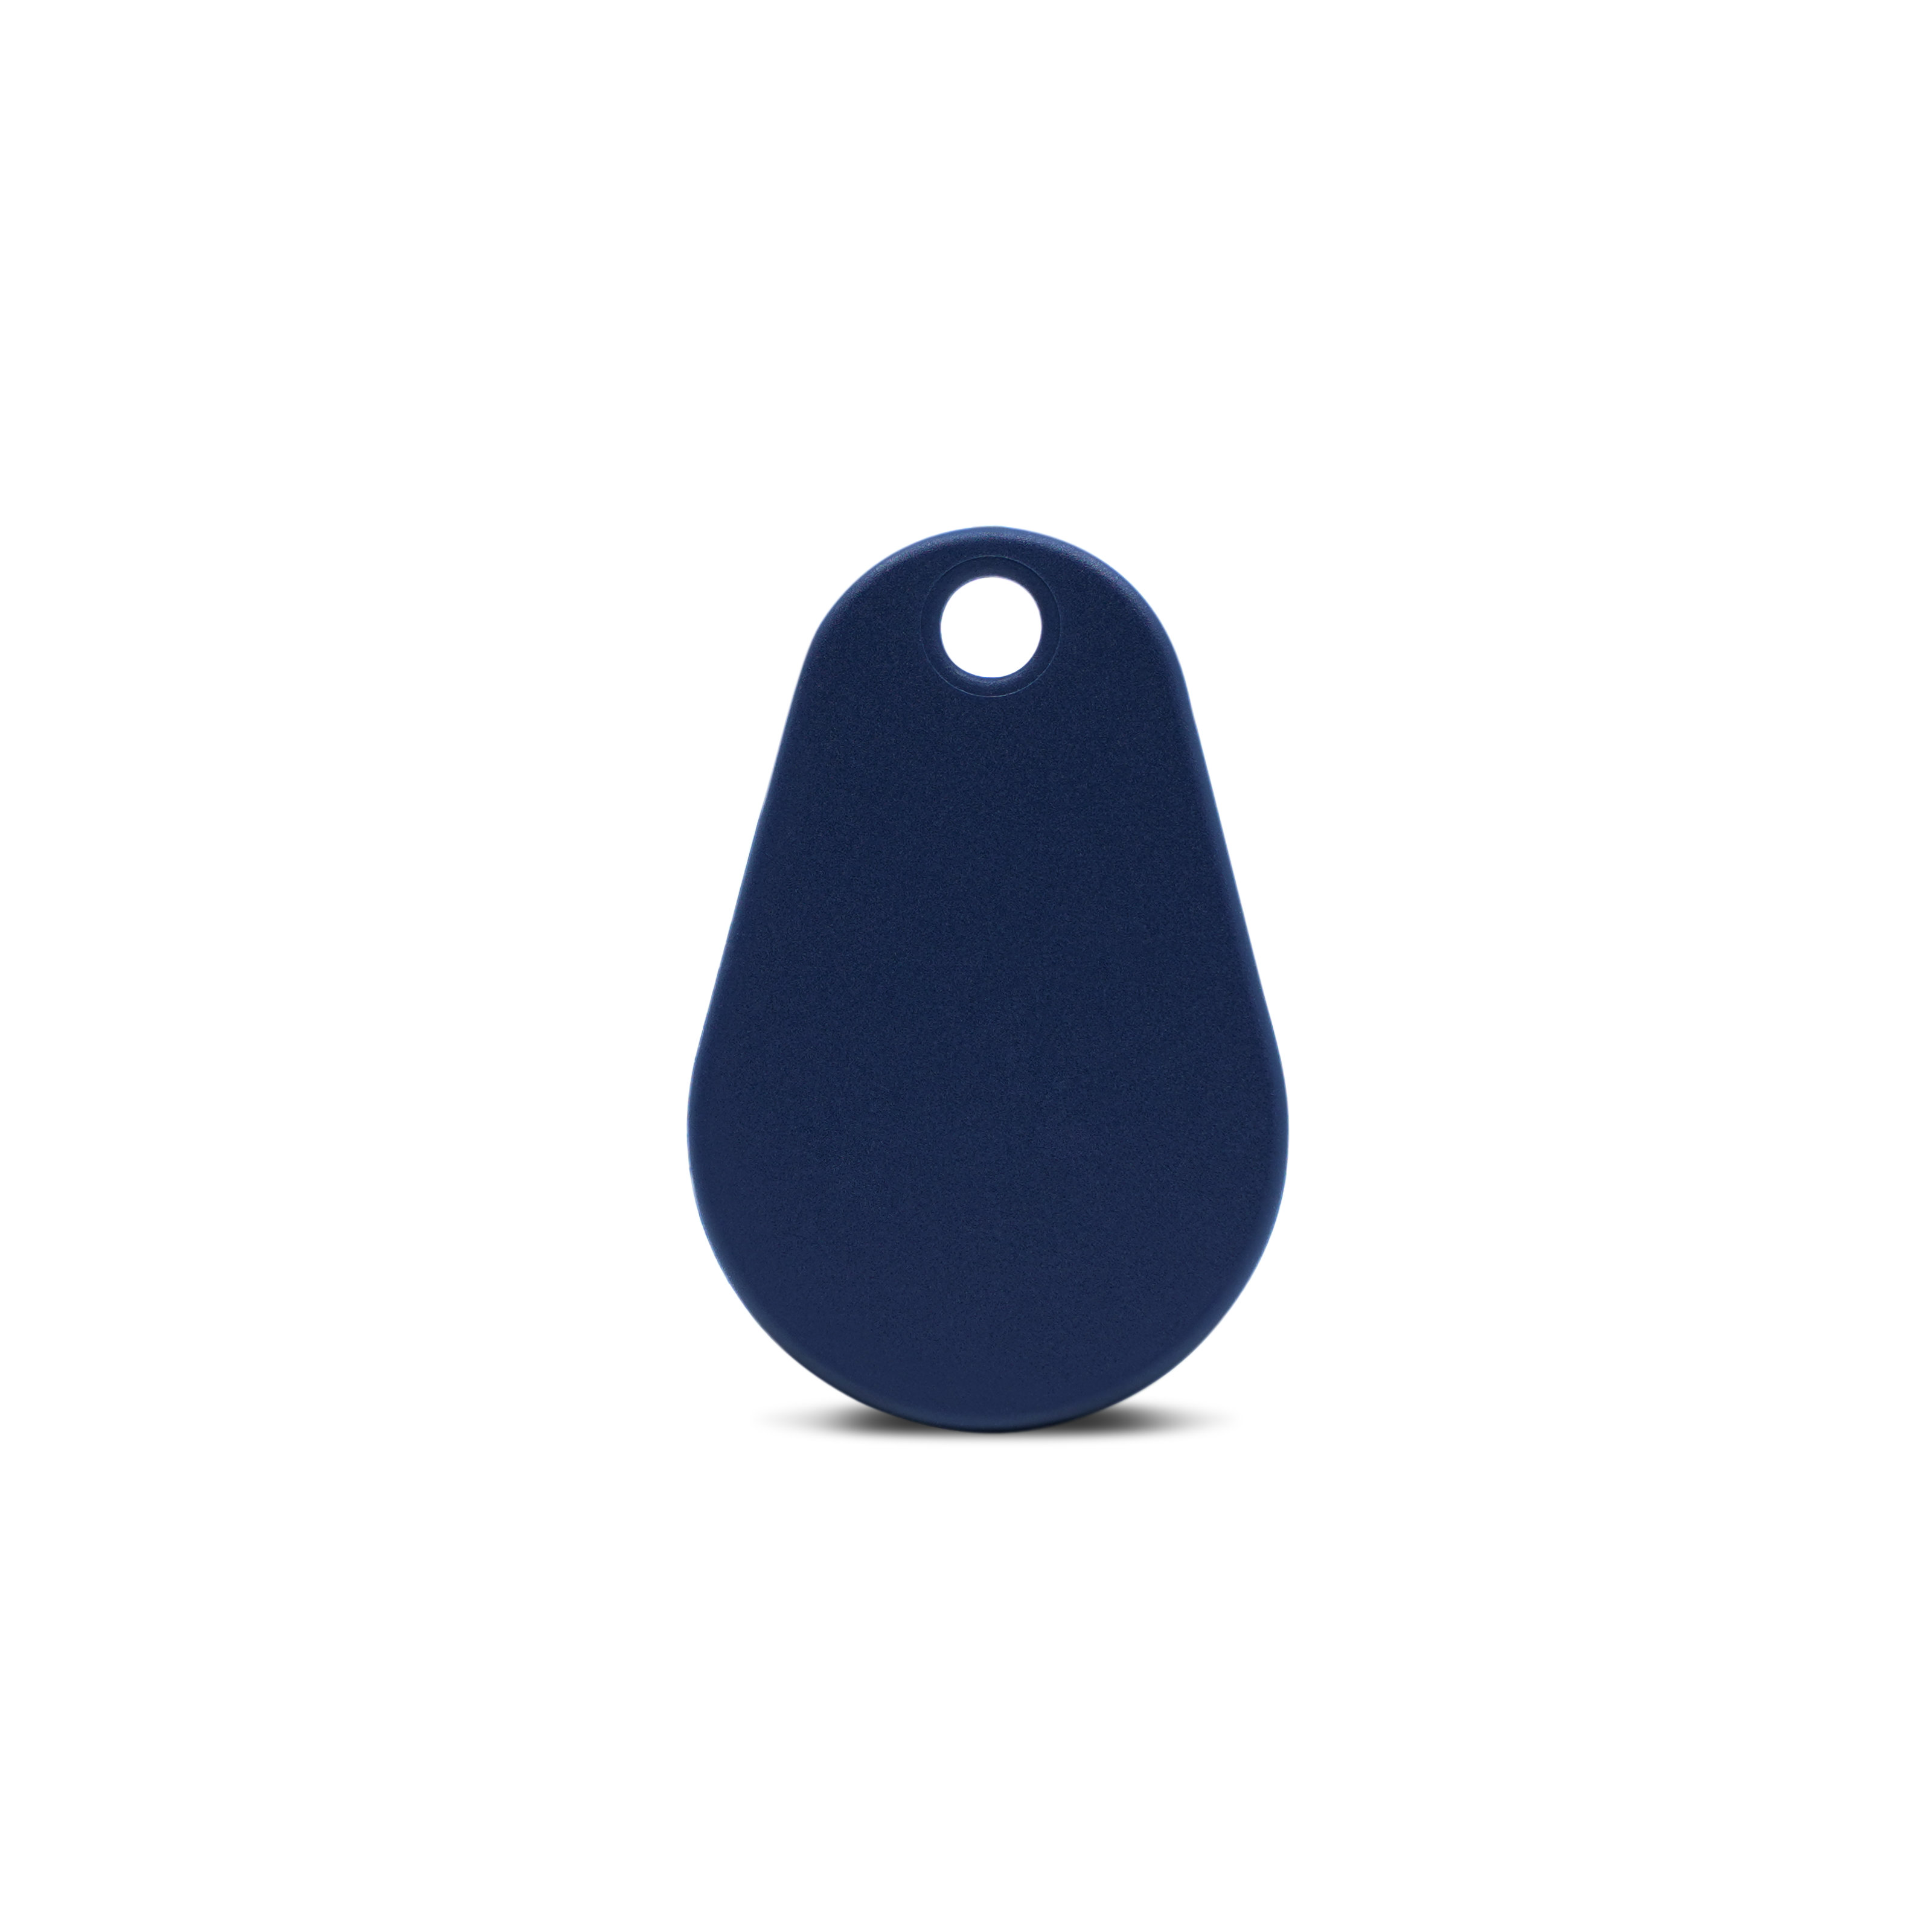 Rückseite NFC Schlüsselanhänger in dunkelblau aus Polyamid